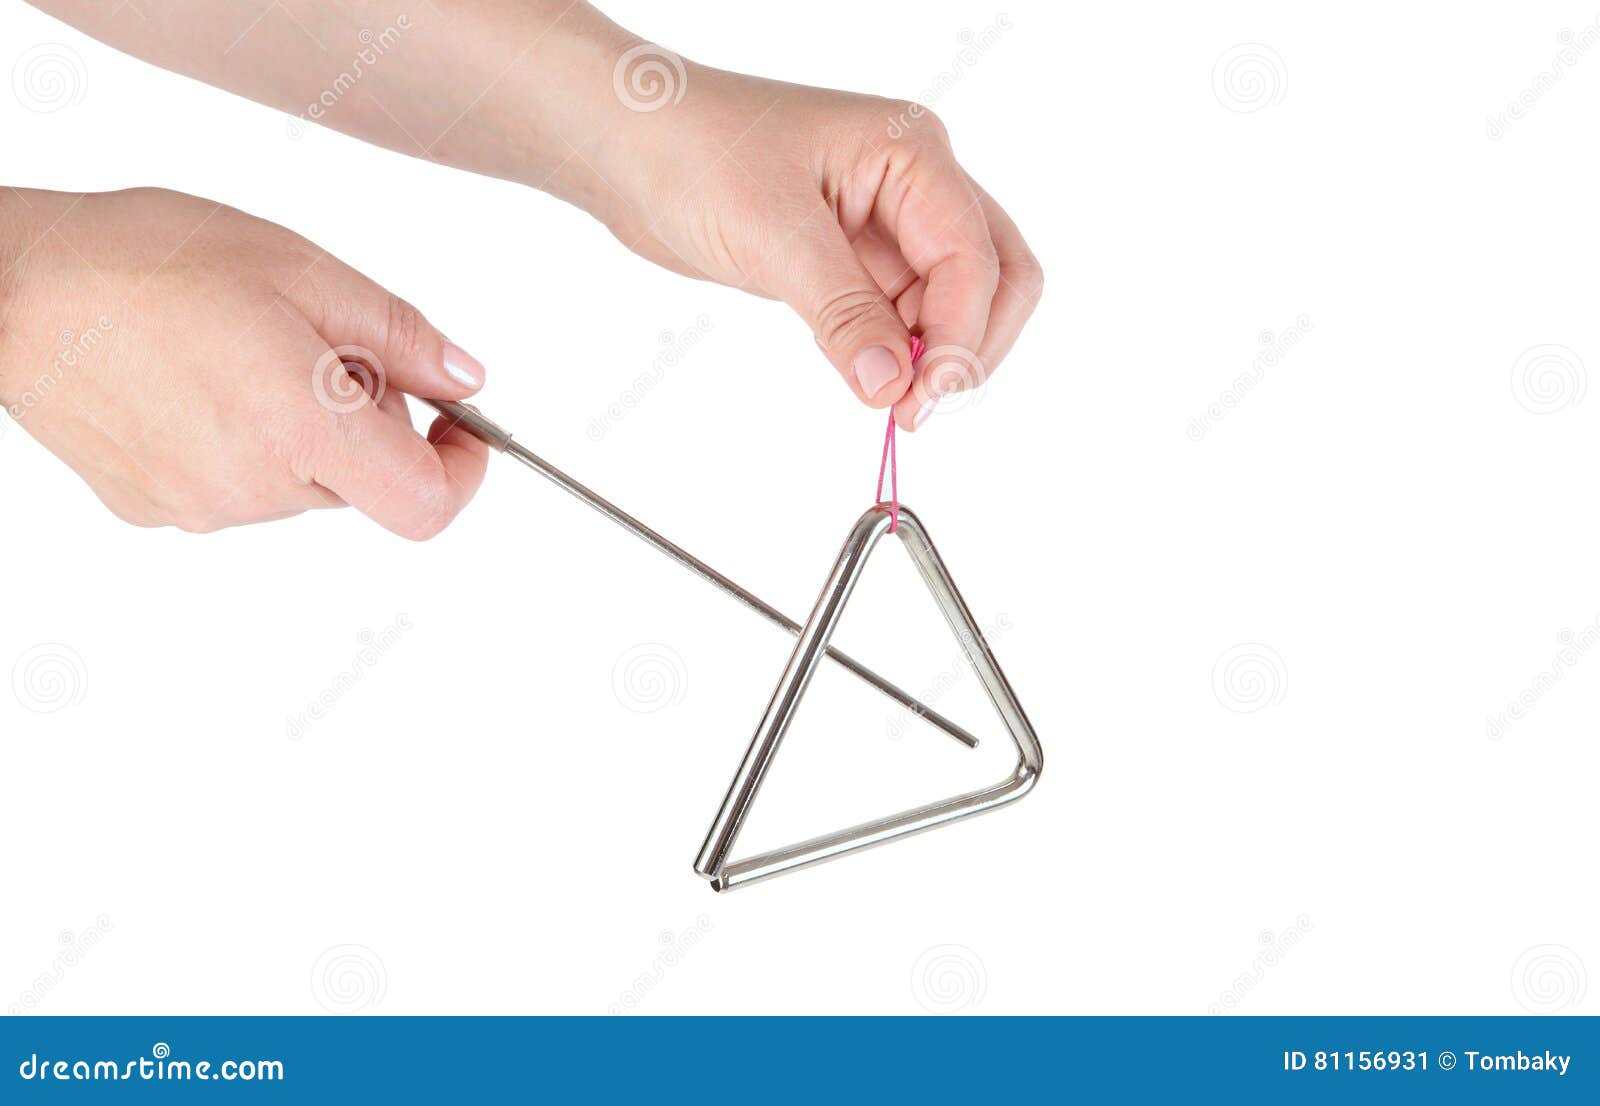 Triangle En Métal, Instrument De Musique Image stock - Image du